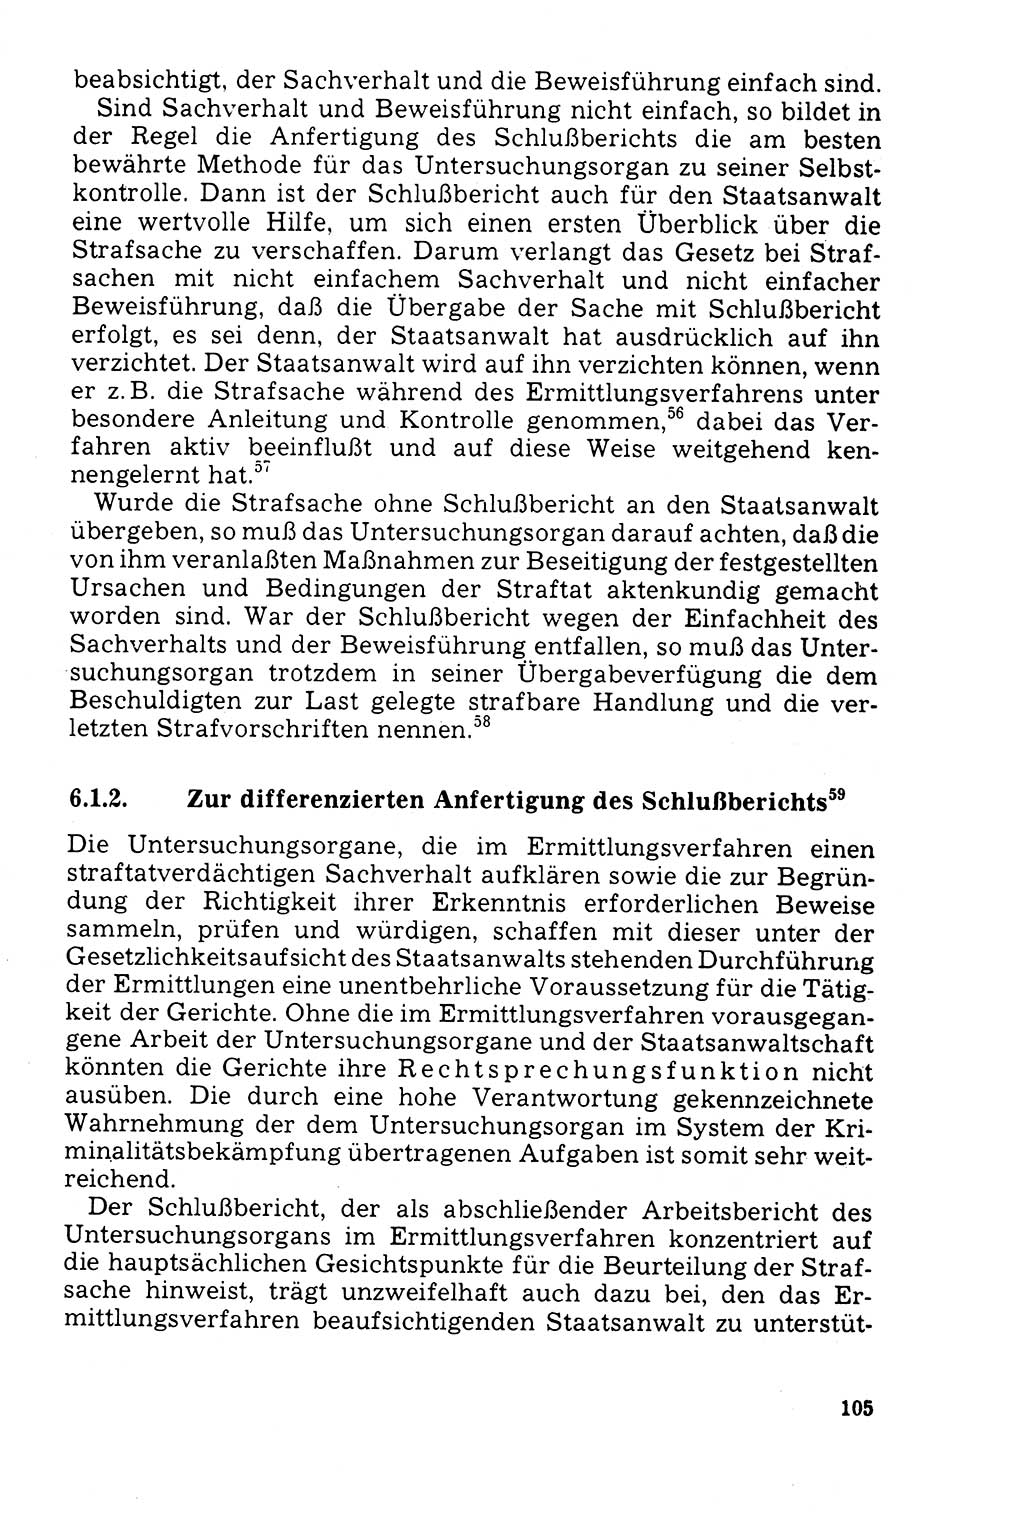 Der Abschluß des Ermittlungsverfahrens [Deutsche Demokratische Republik (DDR)] 1978, Seite 105 (Abschl. EV DDR 1978, S. 105)